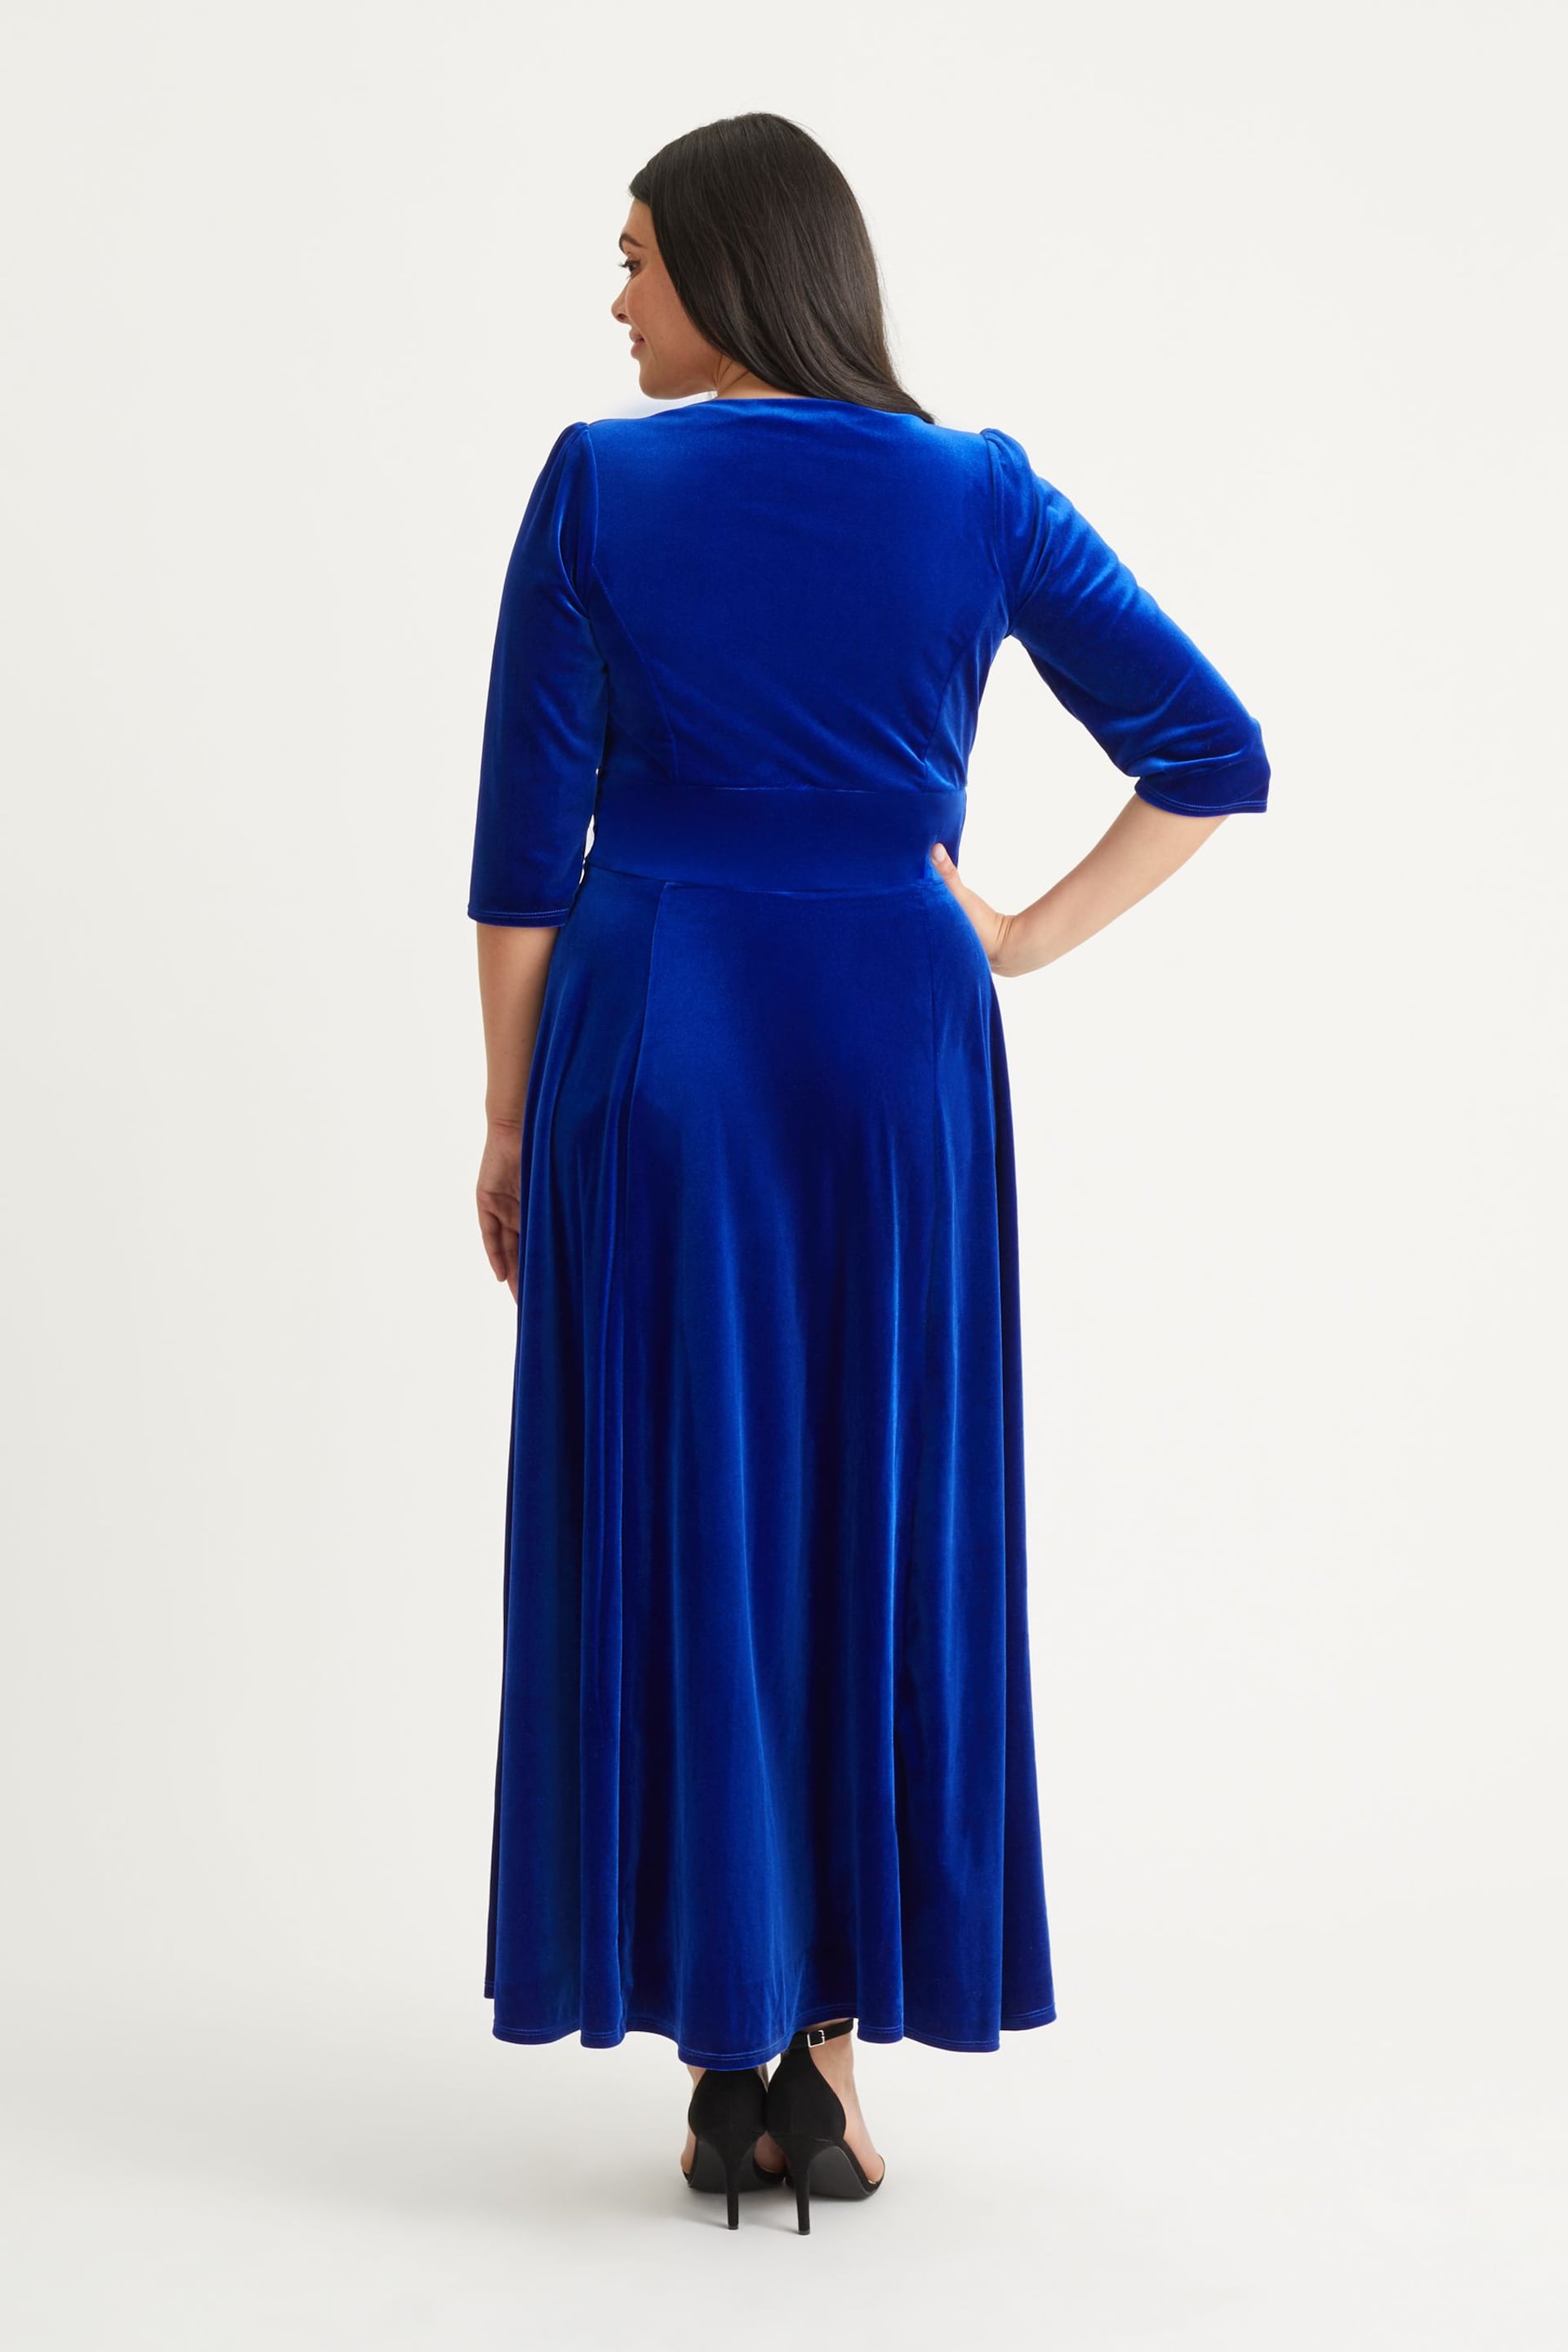 Scarlett & Jo Blue Verity Velvet Maxi Gown - Image 2 of 4